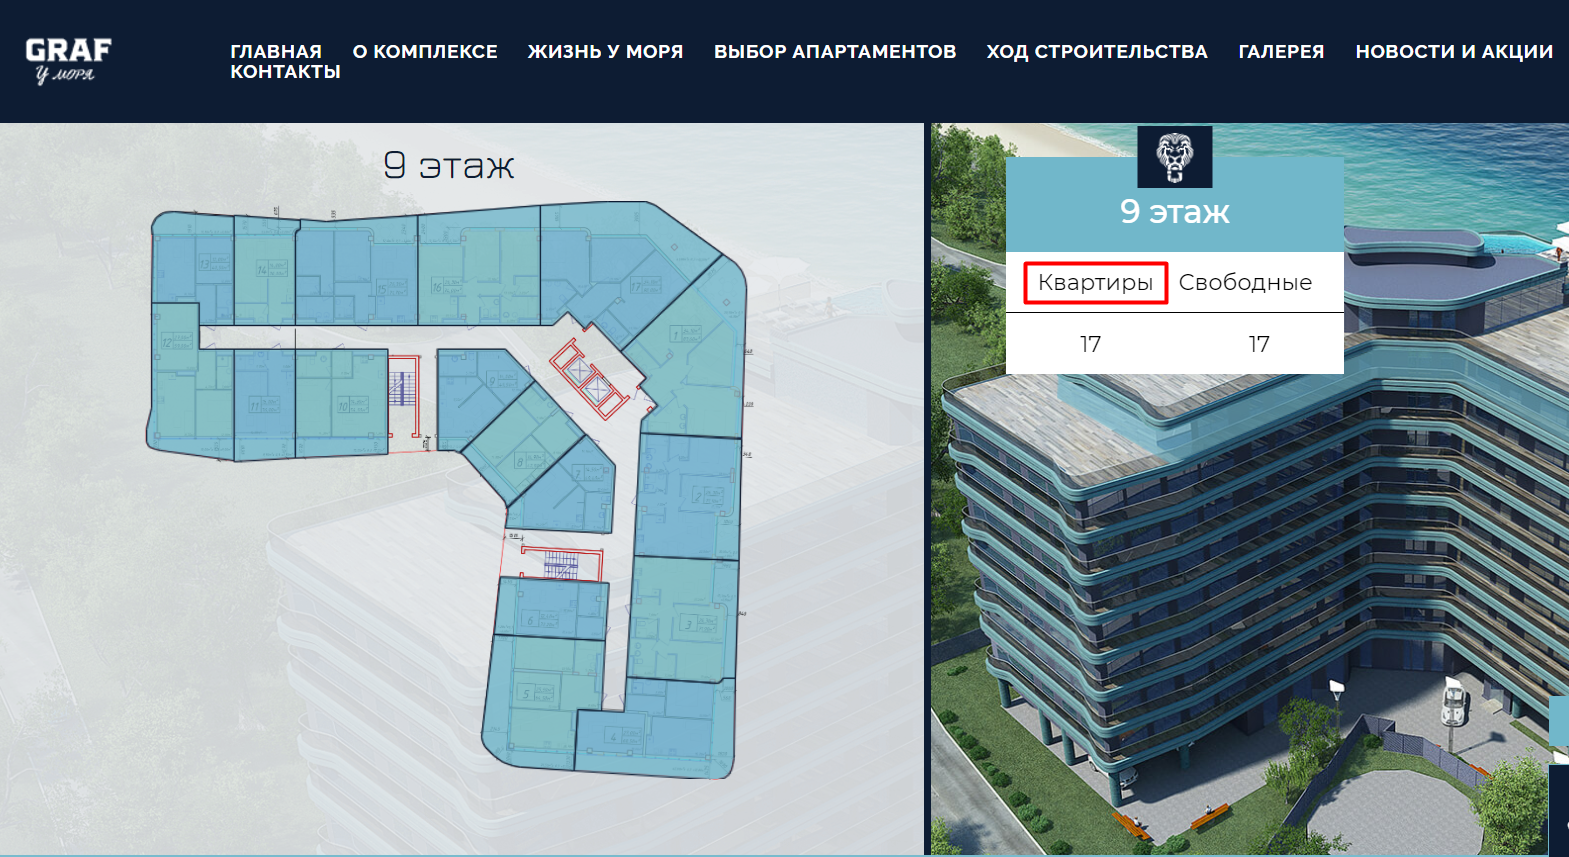 Скриншот раздела "выбор апартаментов" на сайте "GRAF у моря"